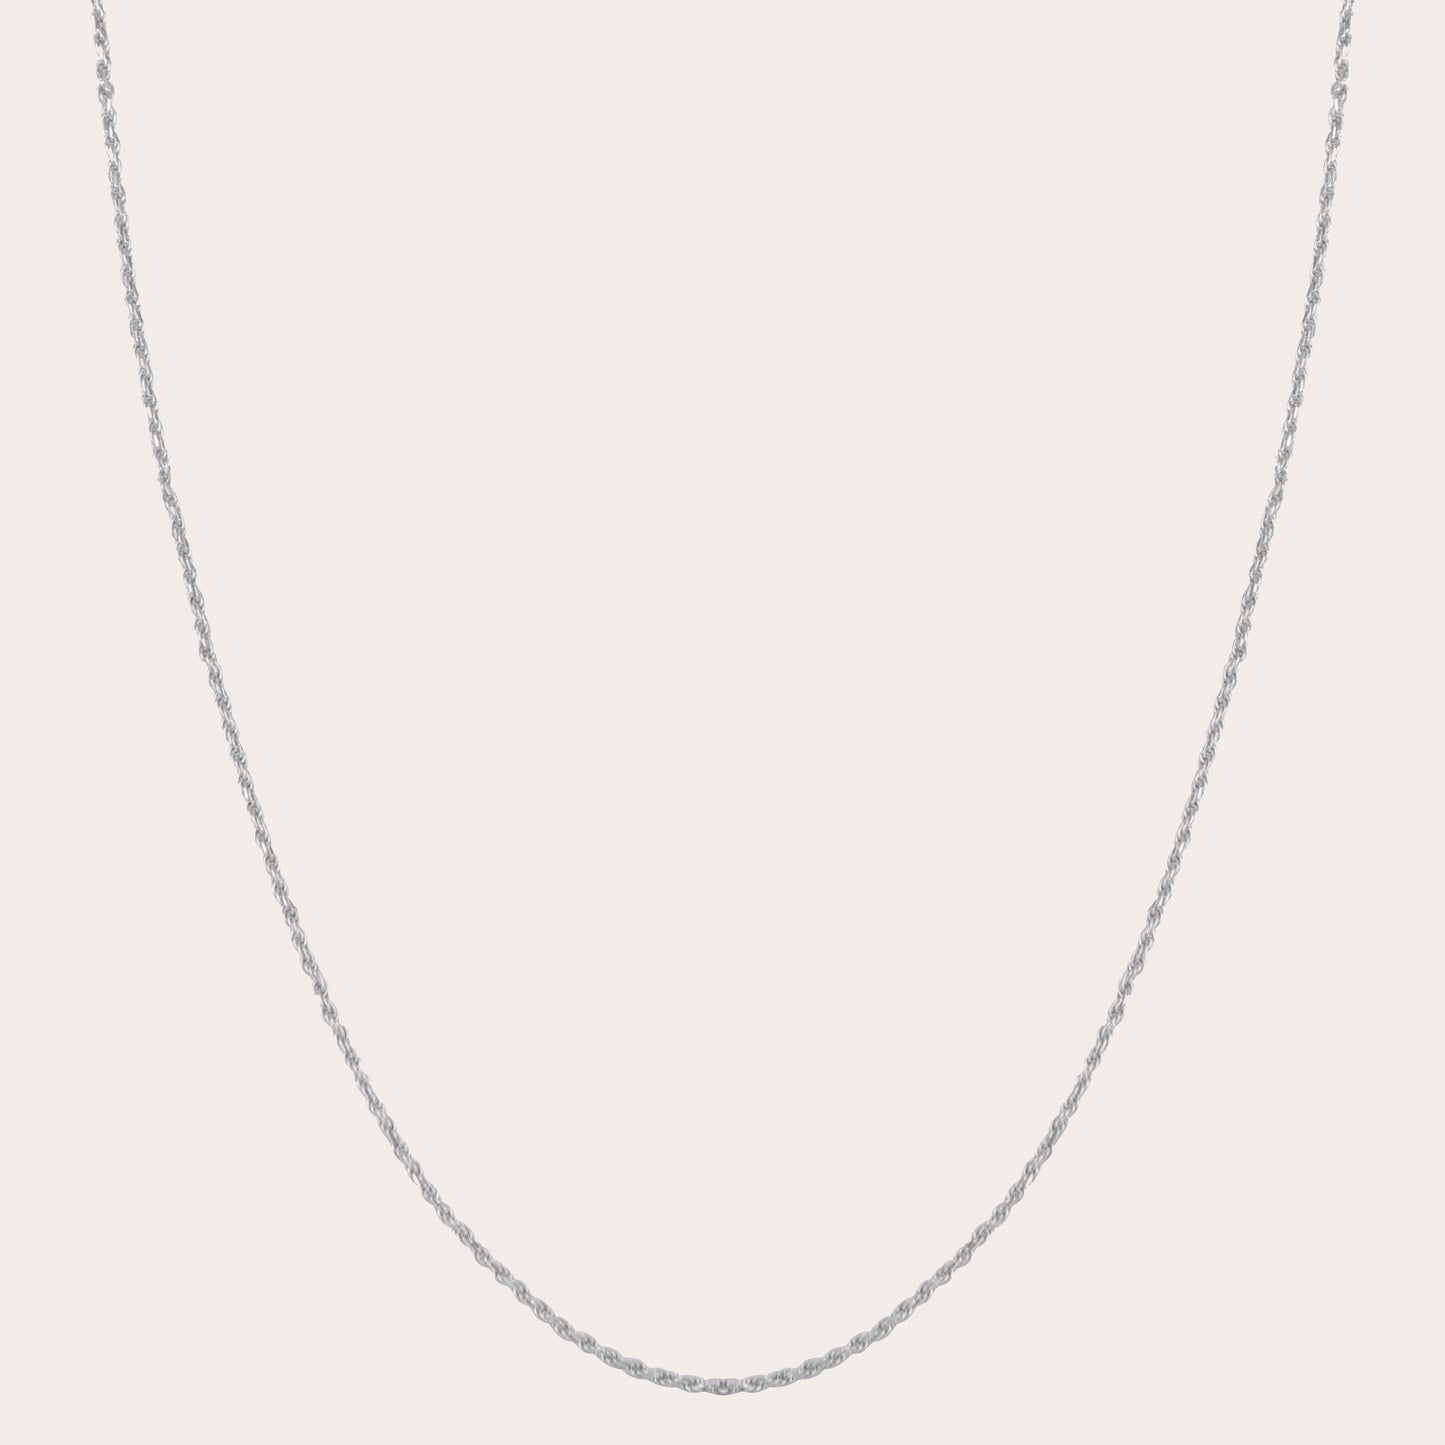 Nomi necklace